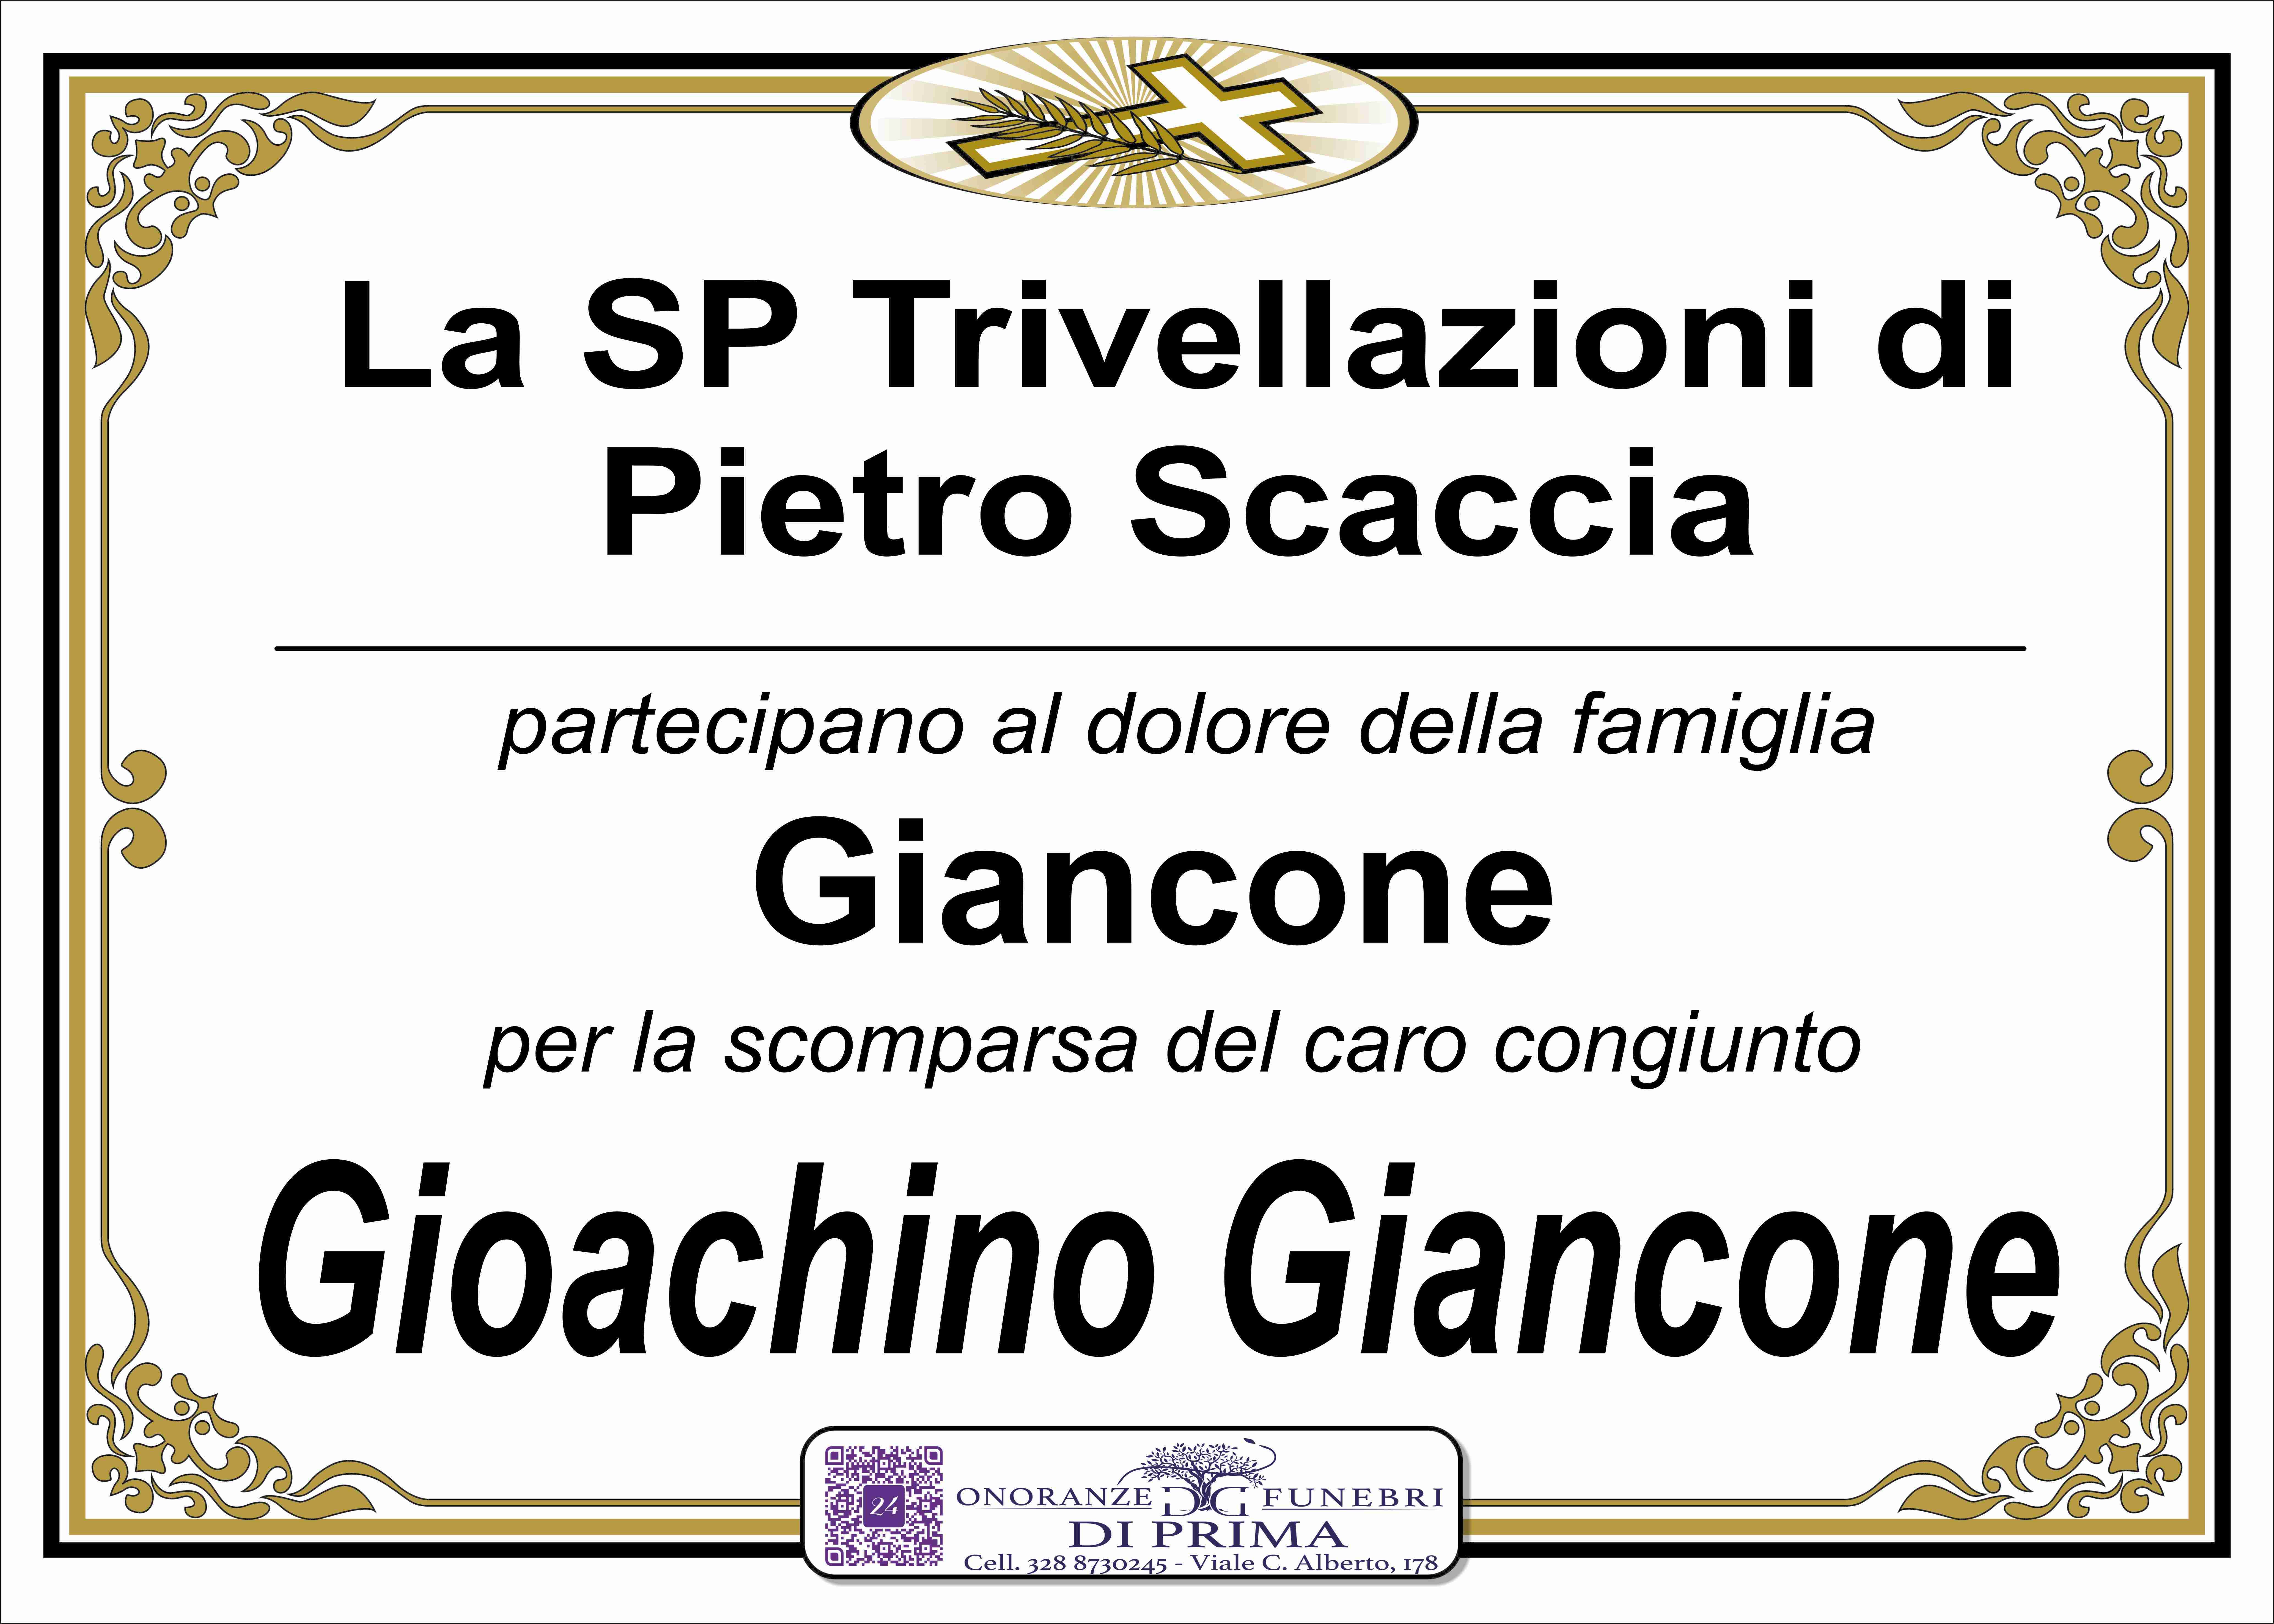 Gioachino Giancone